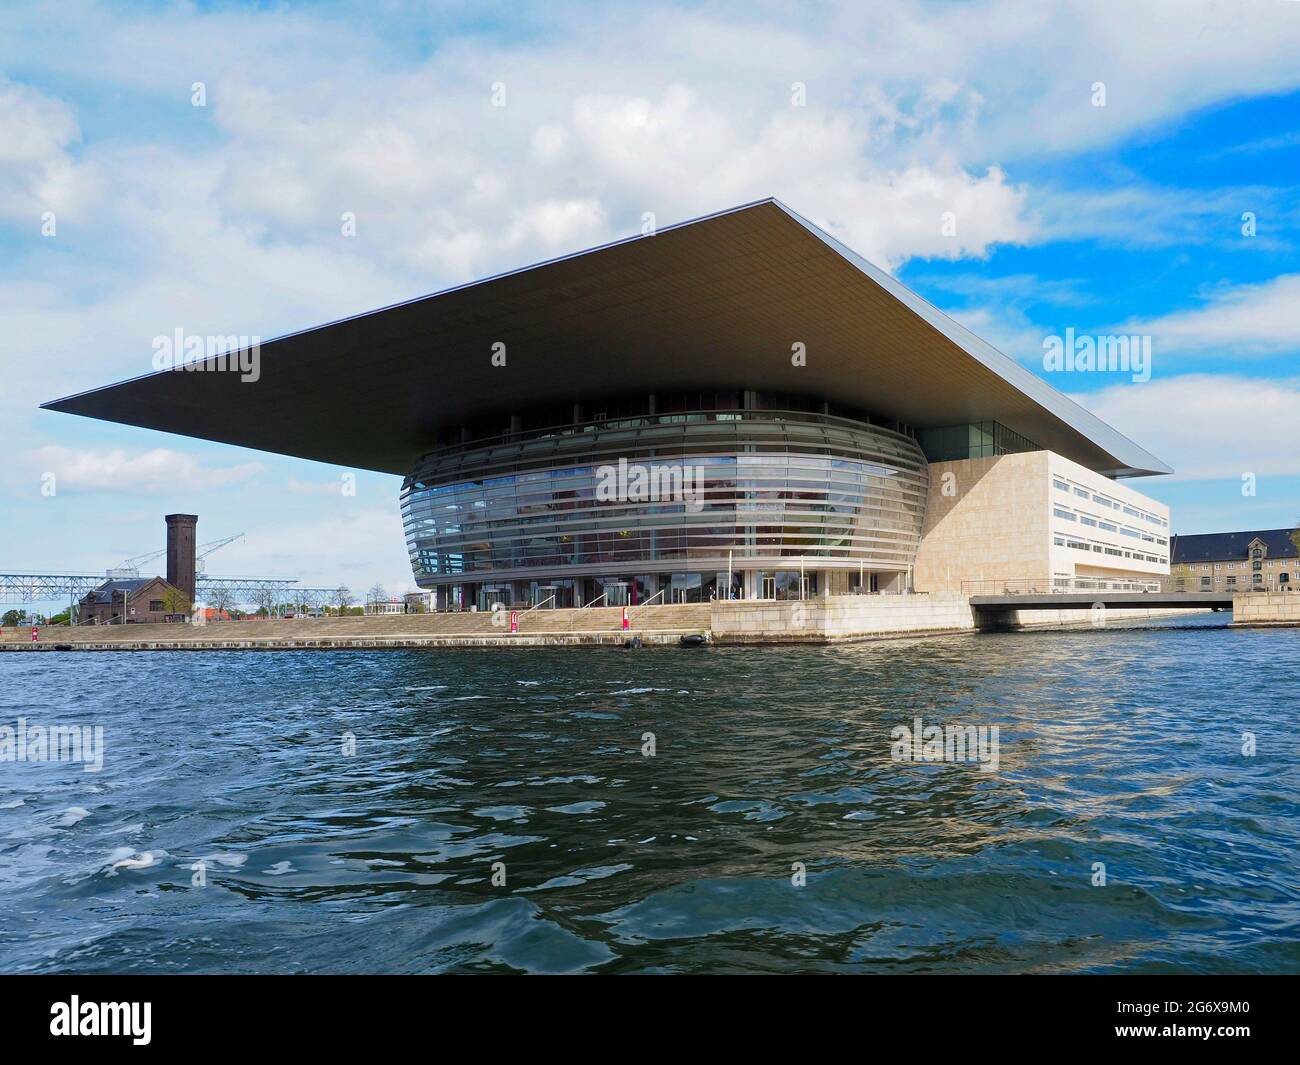 L'Opéra national de Copenhague Danemark sur la côte Baltique conçu par Henning Larsen Banque D'Images